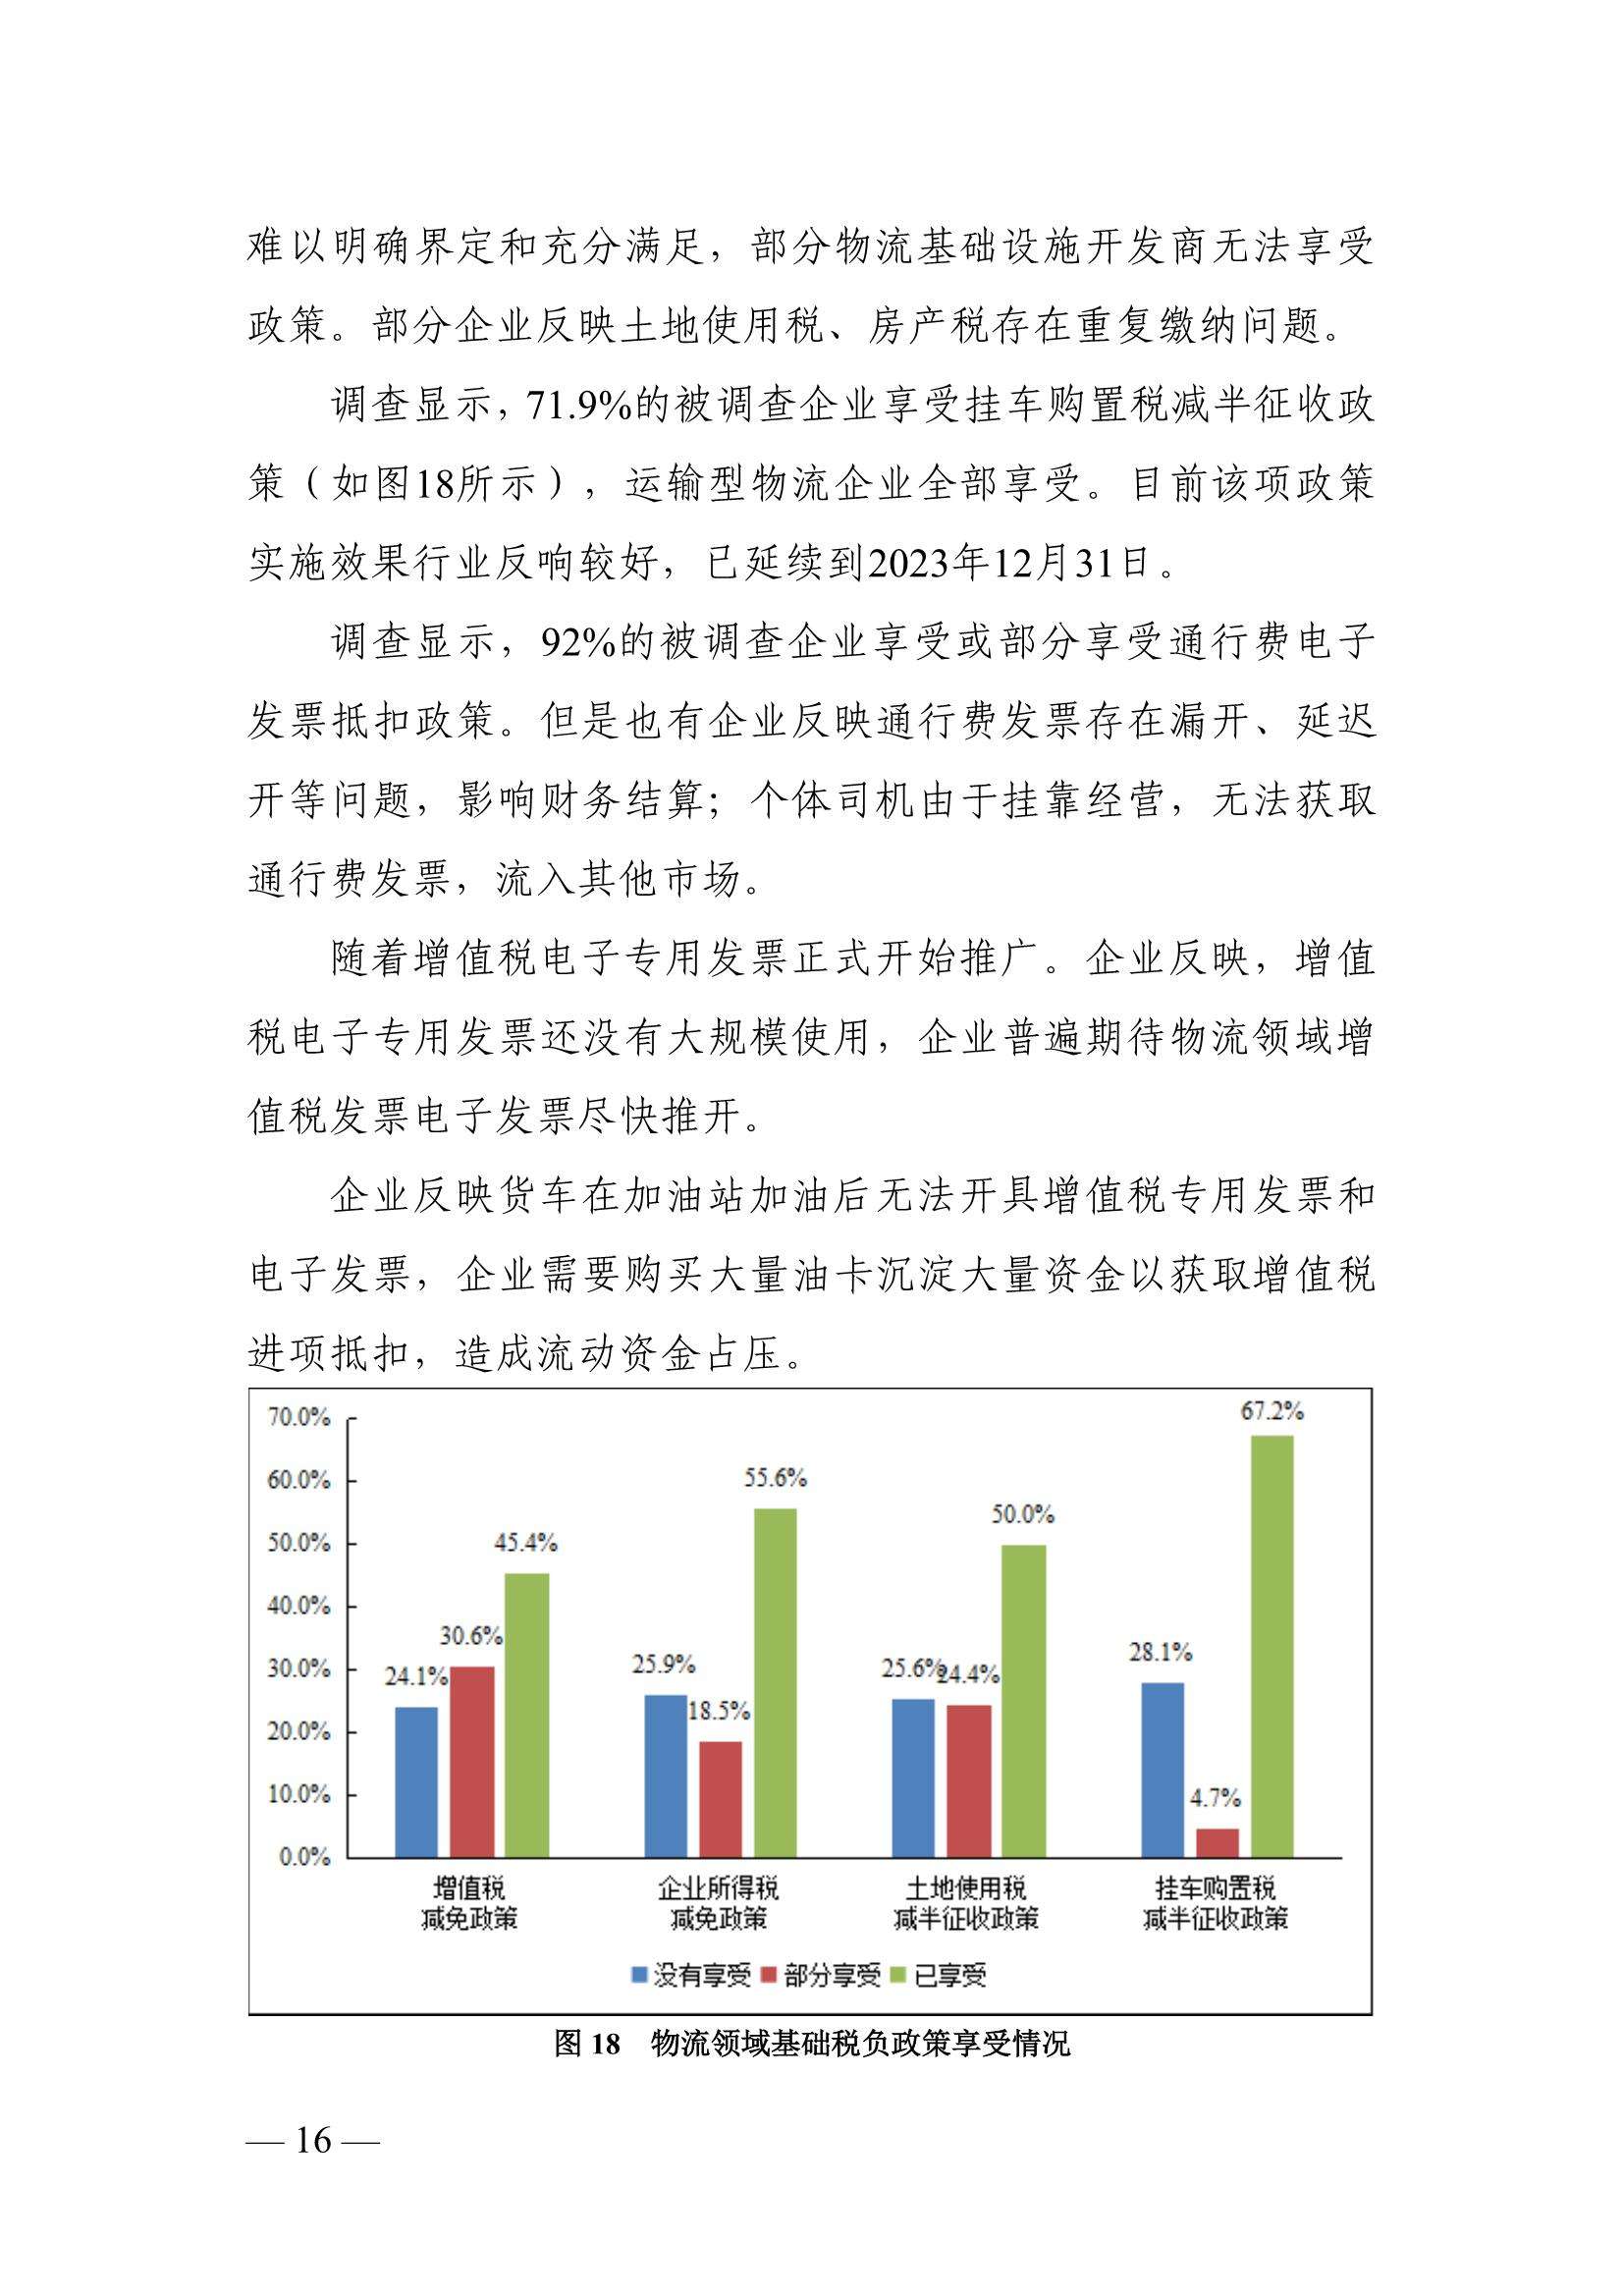 义乌市场采购贸易调研报告(义乌对外贸易服务中心)